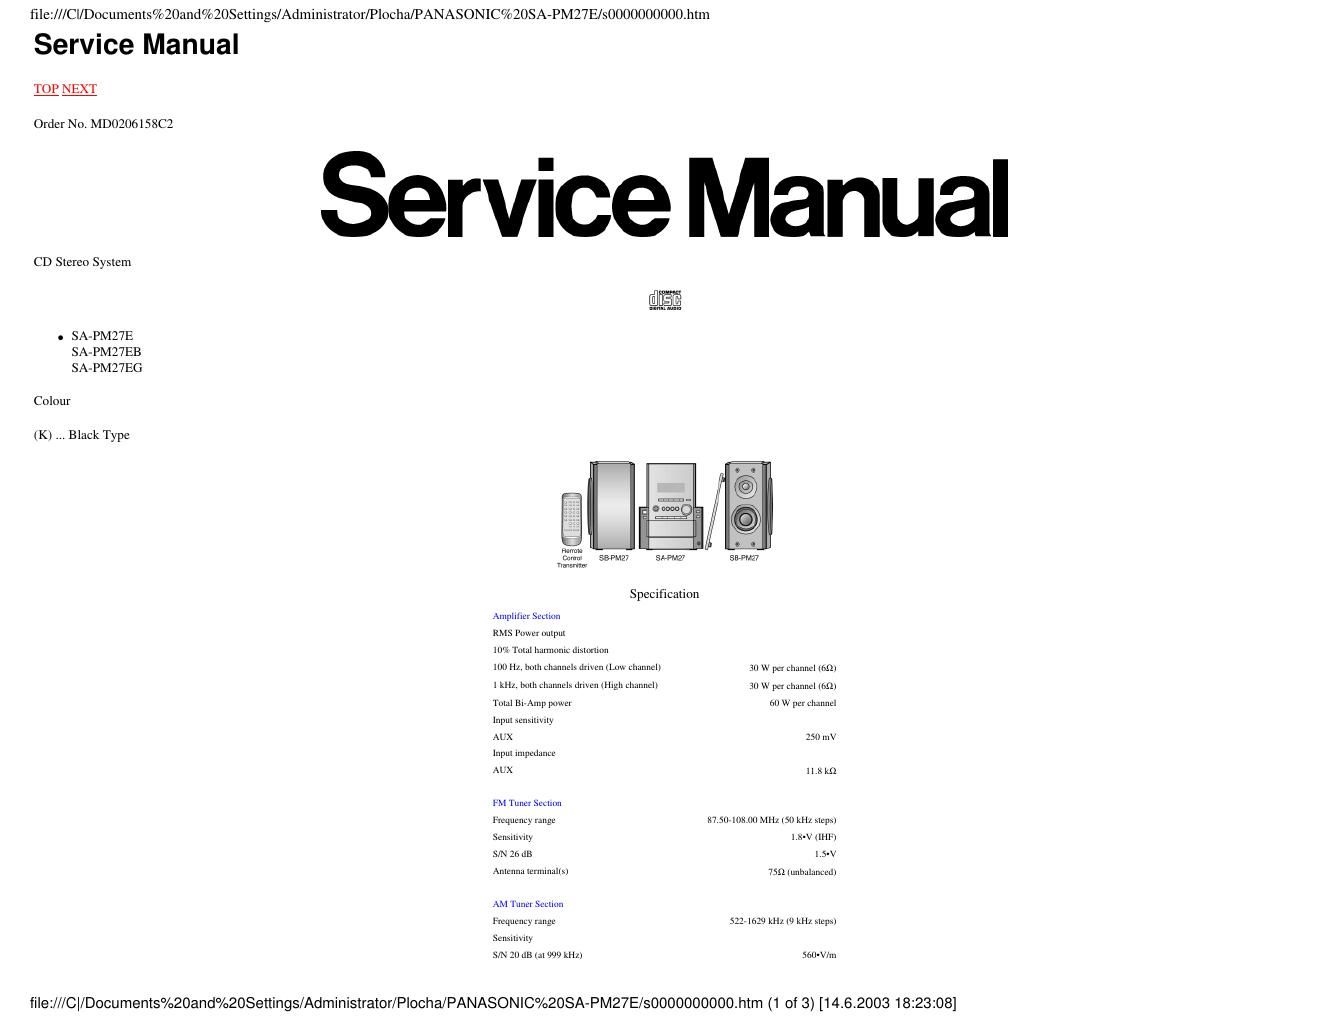 panasonic sa pm 27 e service manual